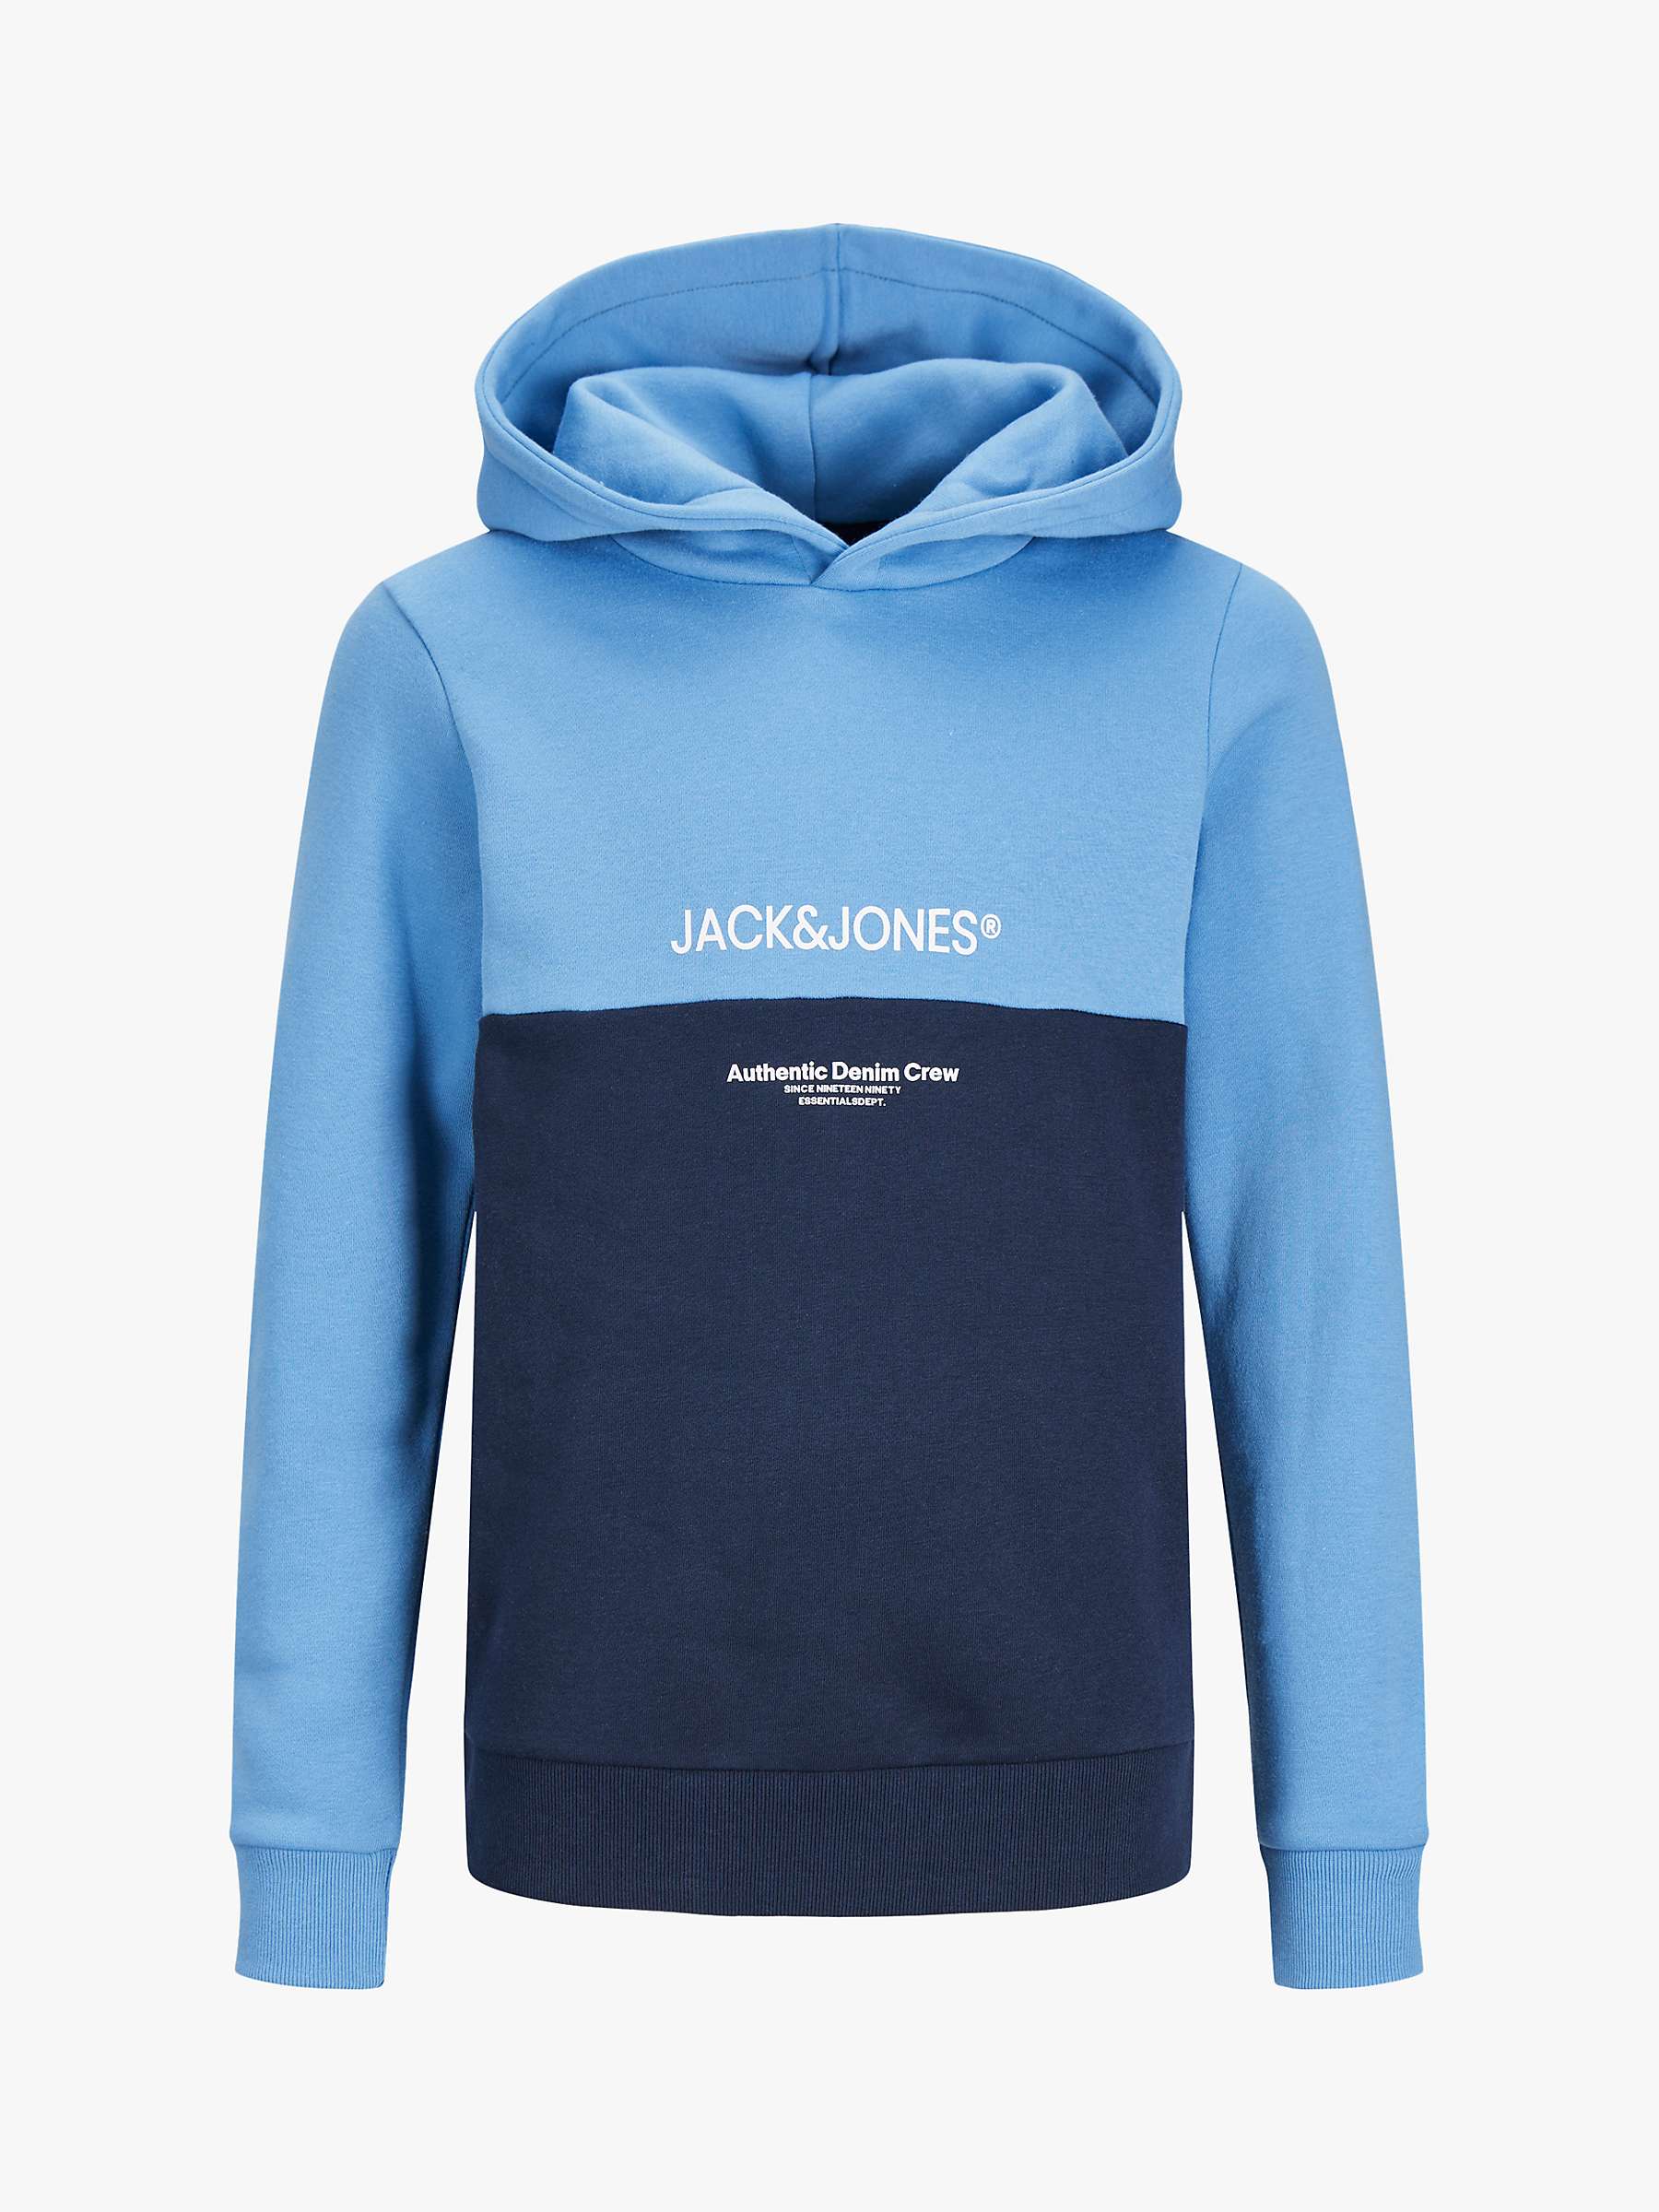 Buy Jack & Jones Kids' Ryder Colour Block Hoodie, Pacific Coast Online at johnlewis.com